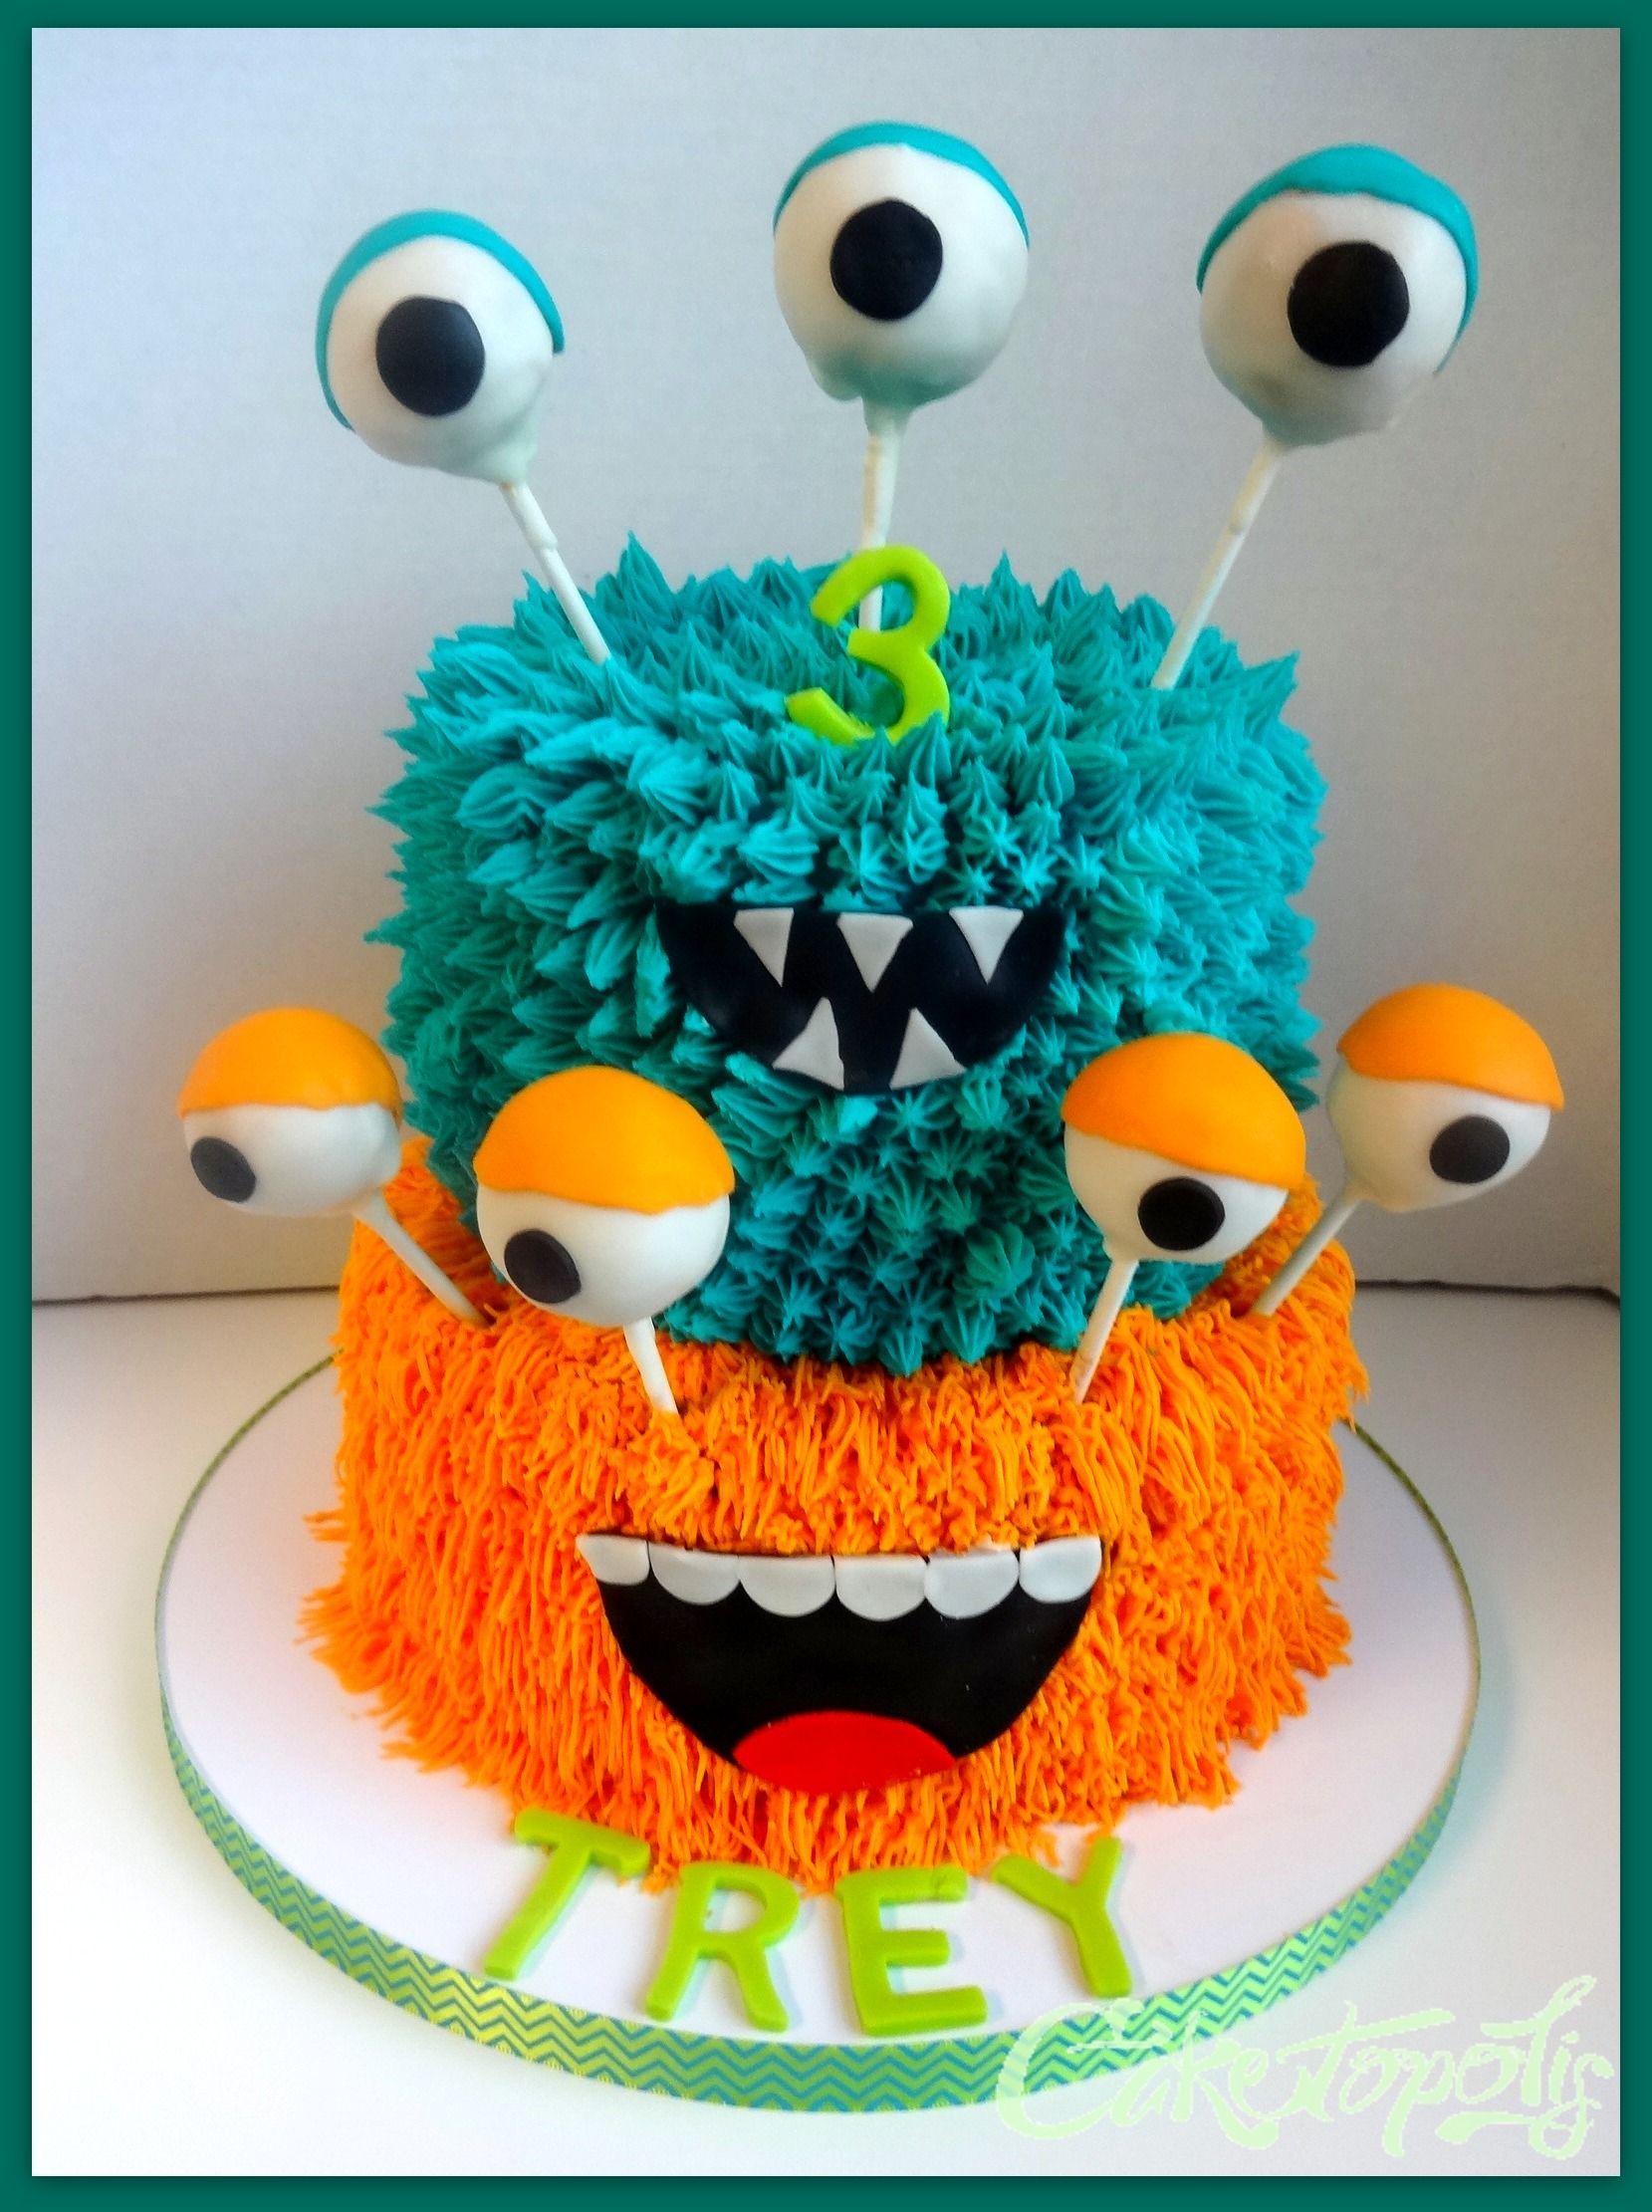 Monster Birthday Cake – Buttercream monster cake with cake balls for the eyes.